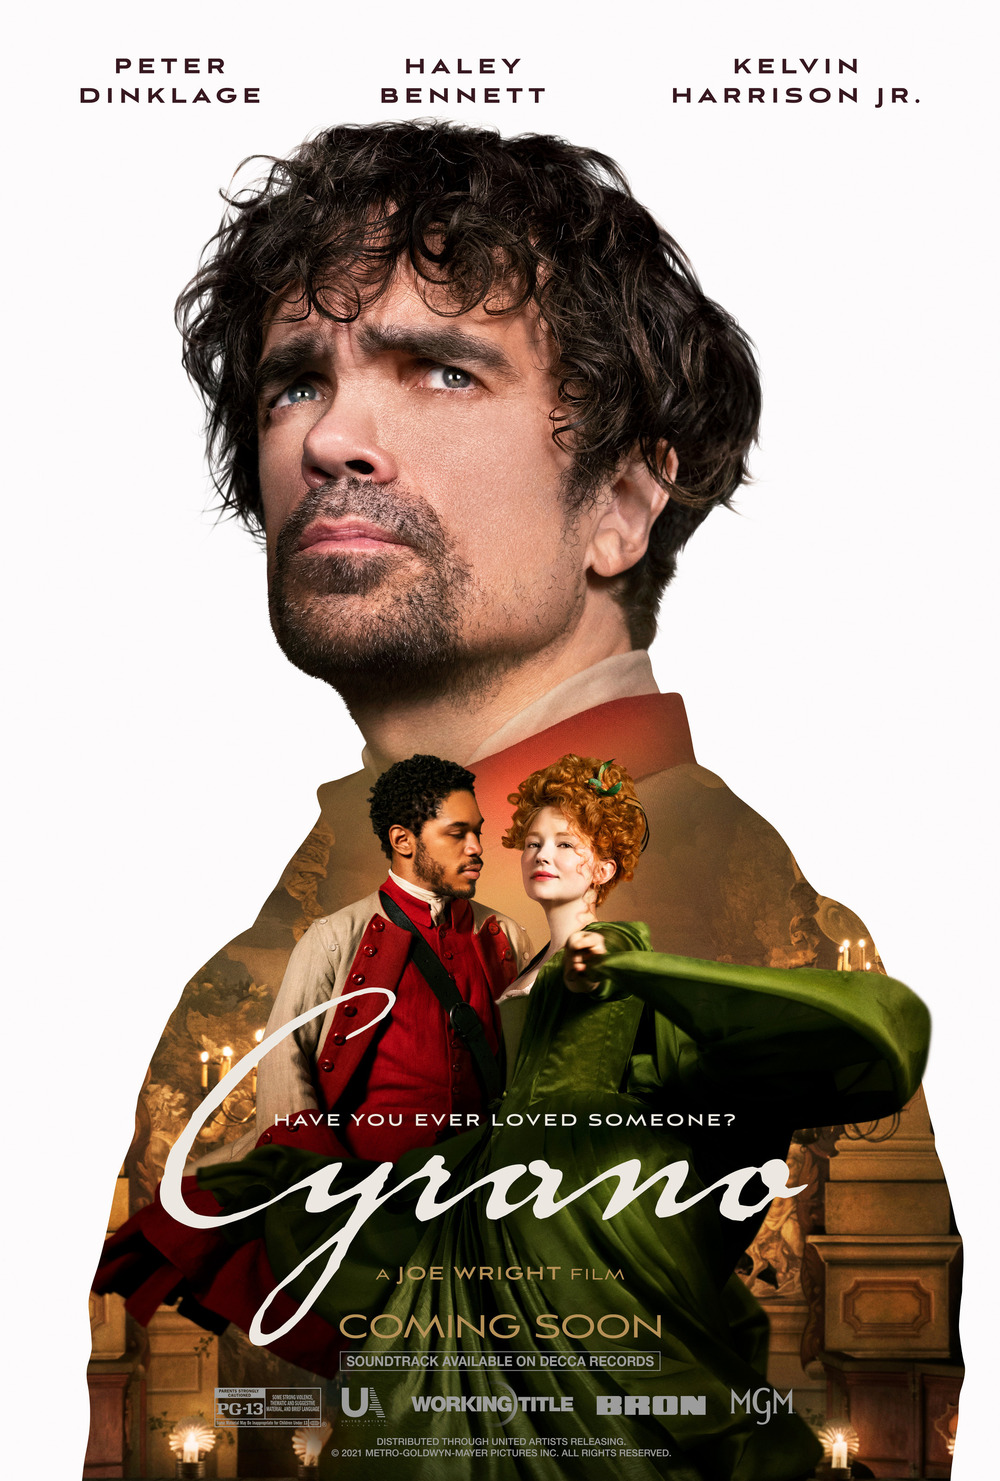 Cyrano DVD cover